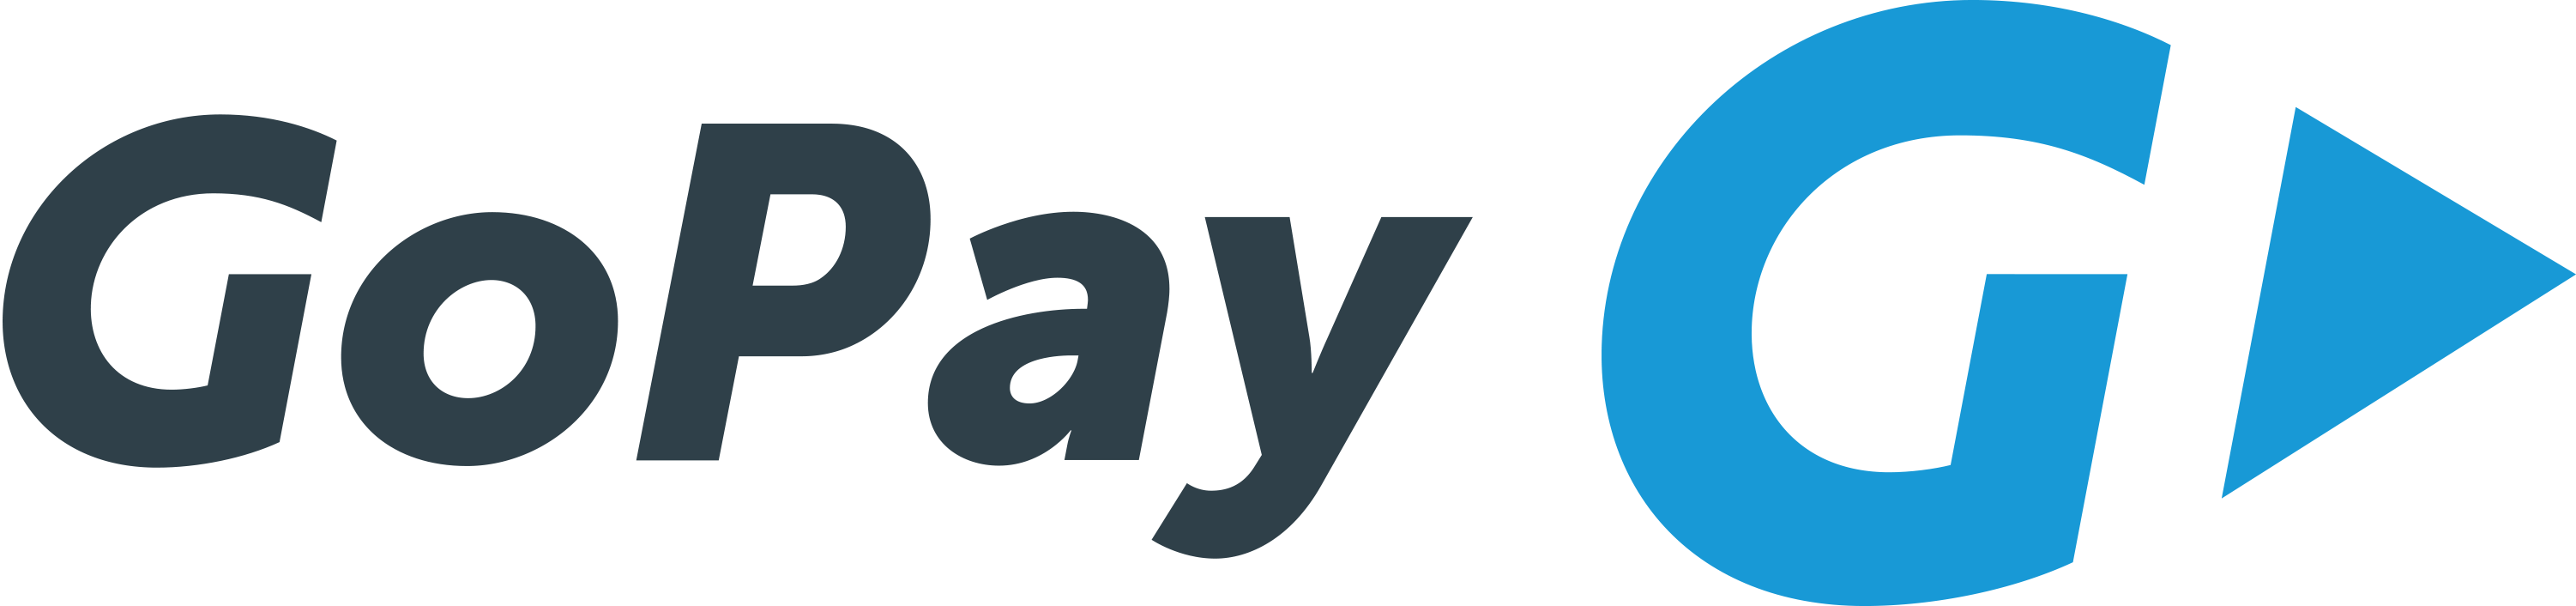 platební metoda gopay logo